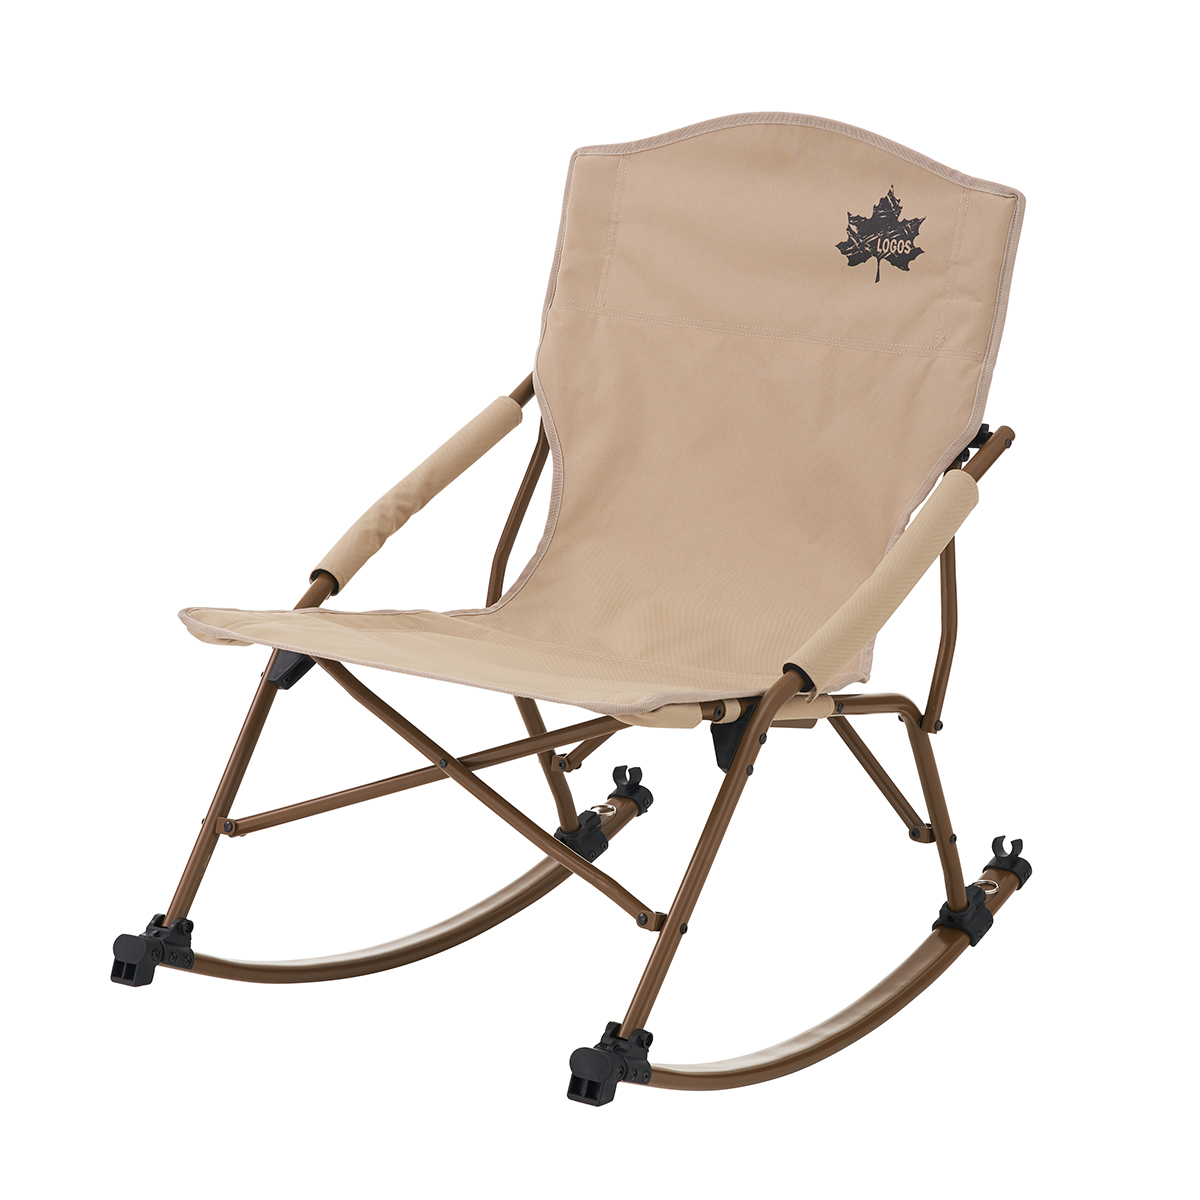 Tradcanvas スウィングチェア|ギア|家具|椅子・ベンチ|製品情報|ロゴス 